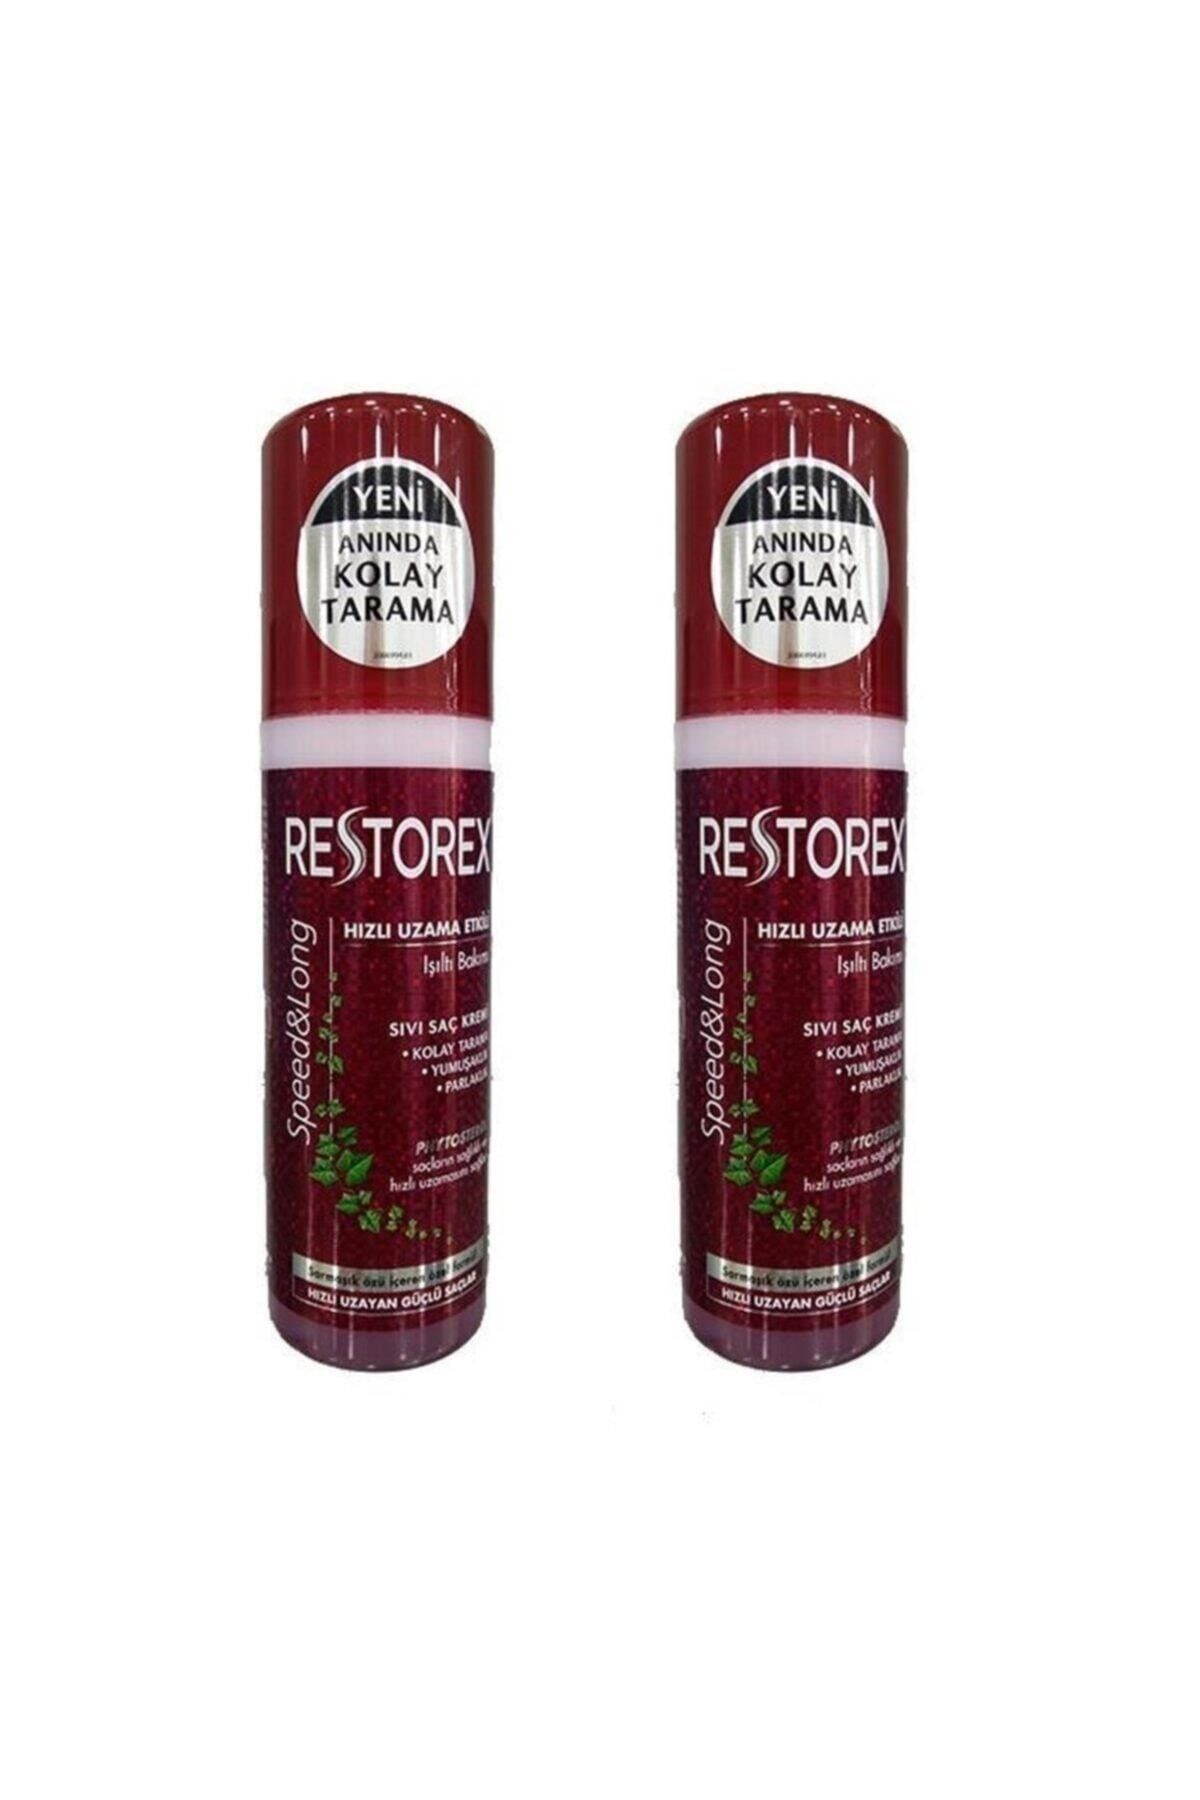 Restorex Sıvı Saç Kremi Sağlıklı Uzama Etkili 200 ml X 2 Adet